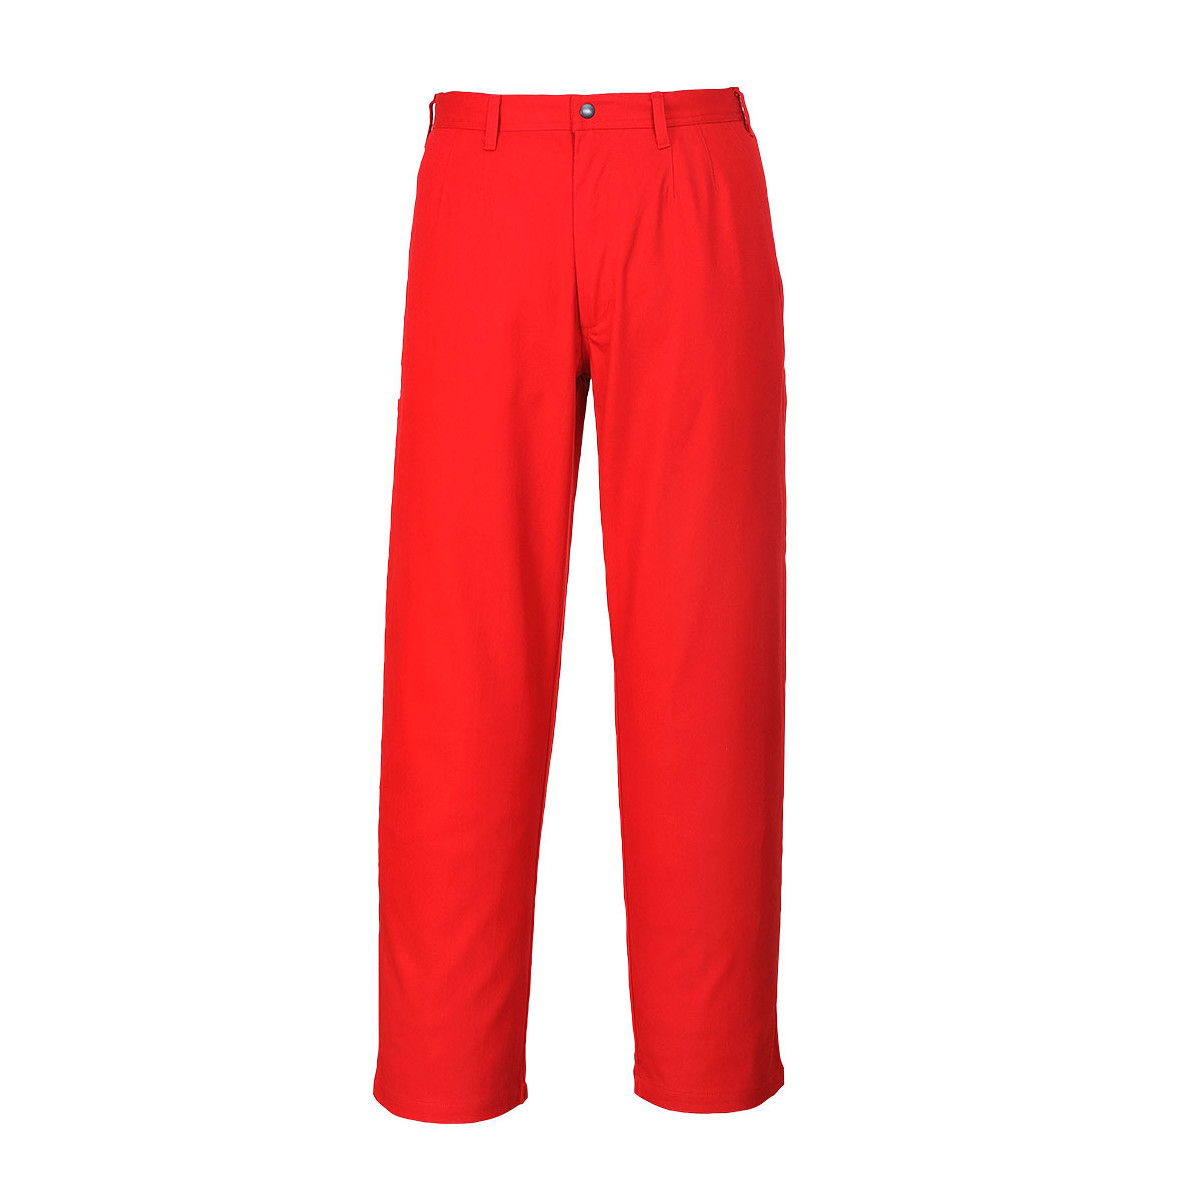 trudnopalna-odziez - Spodnie trudnopalne spodnie do pasa bizweld czerwone BZ30 Portwest